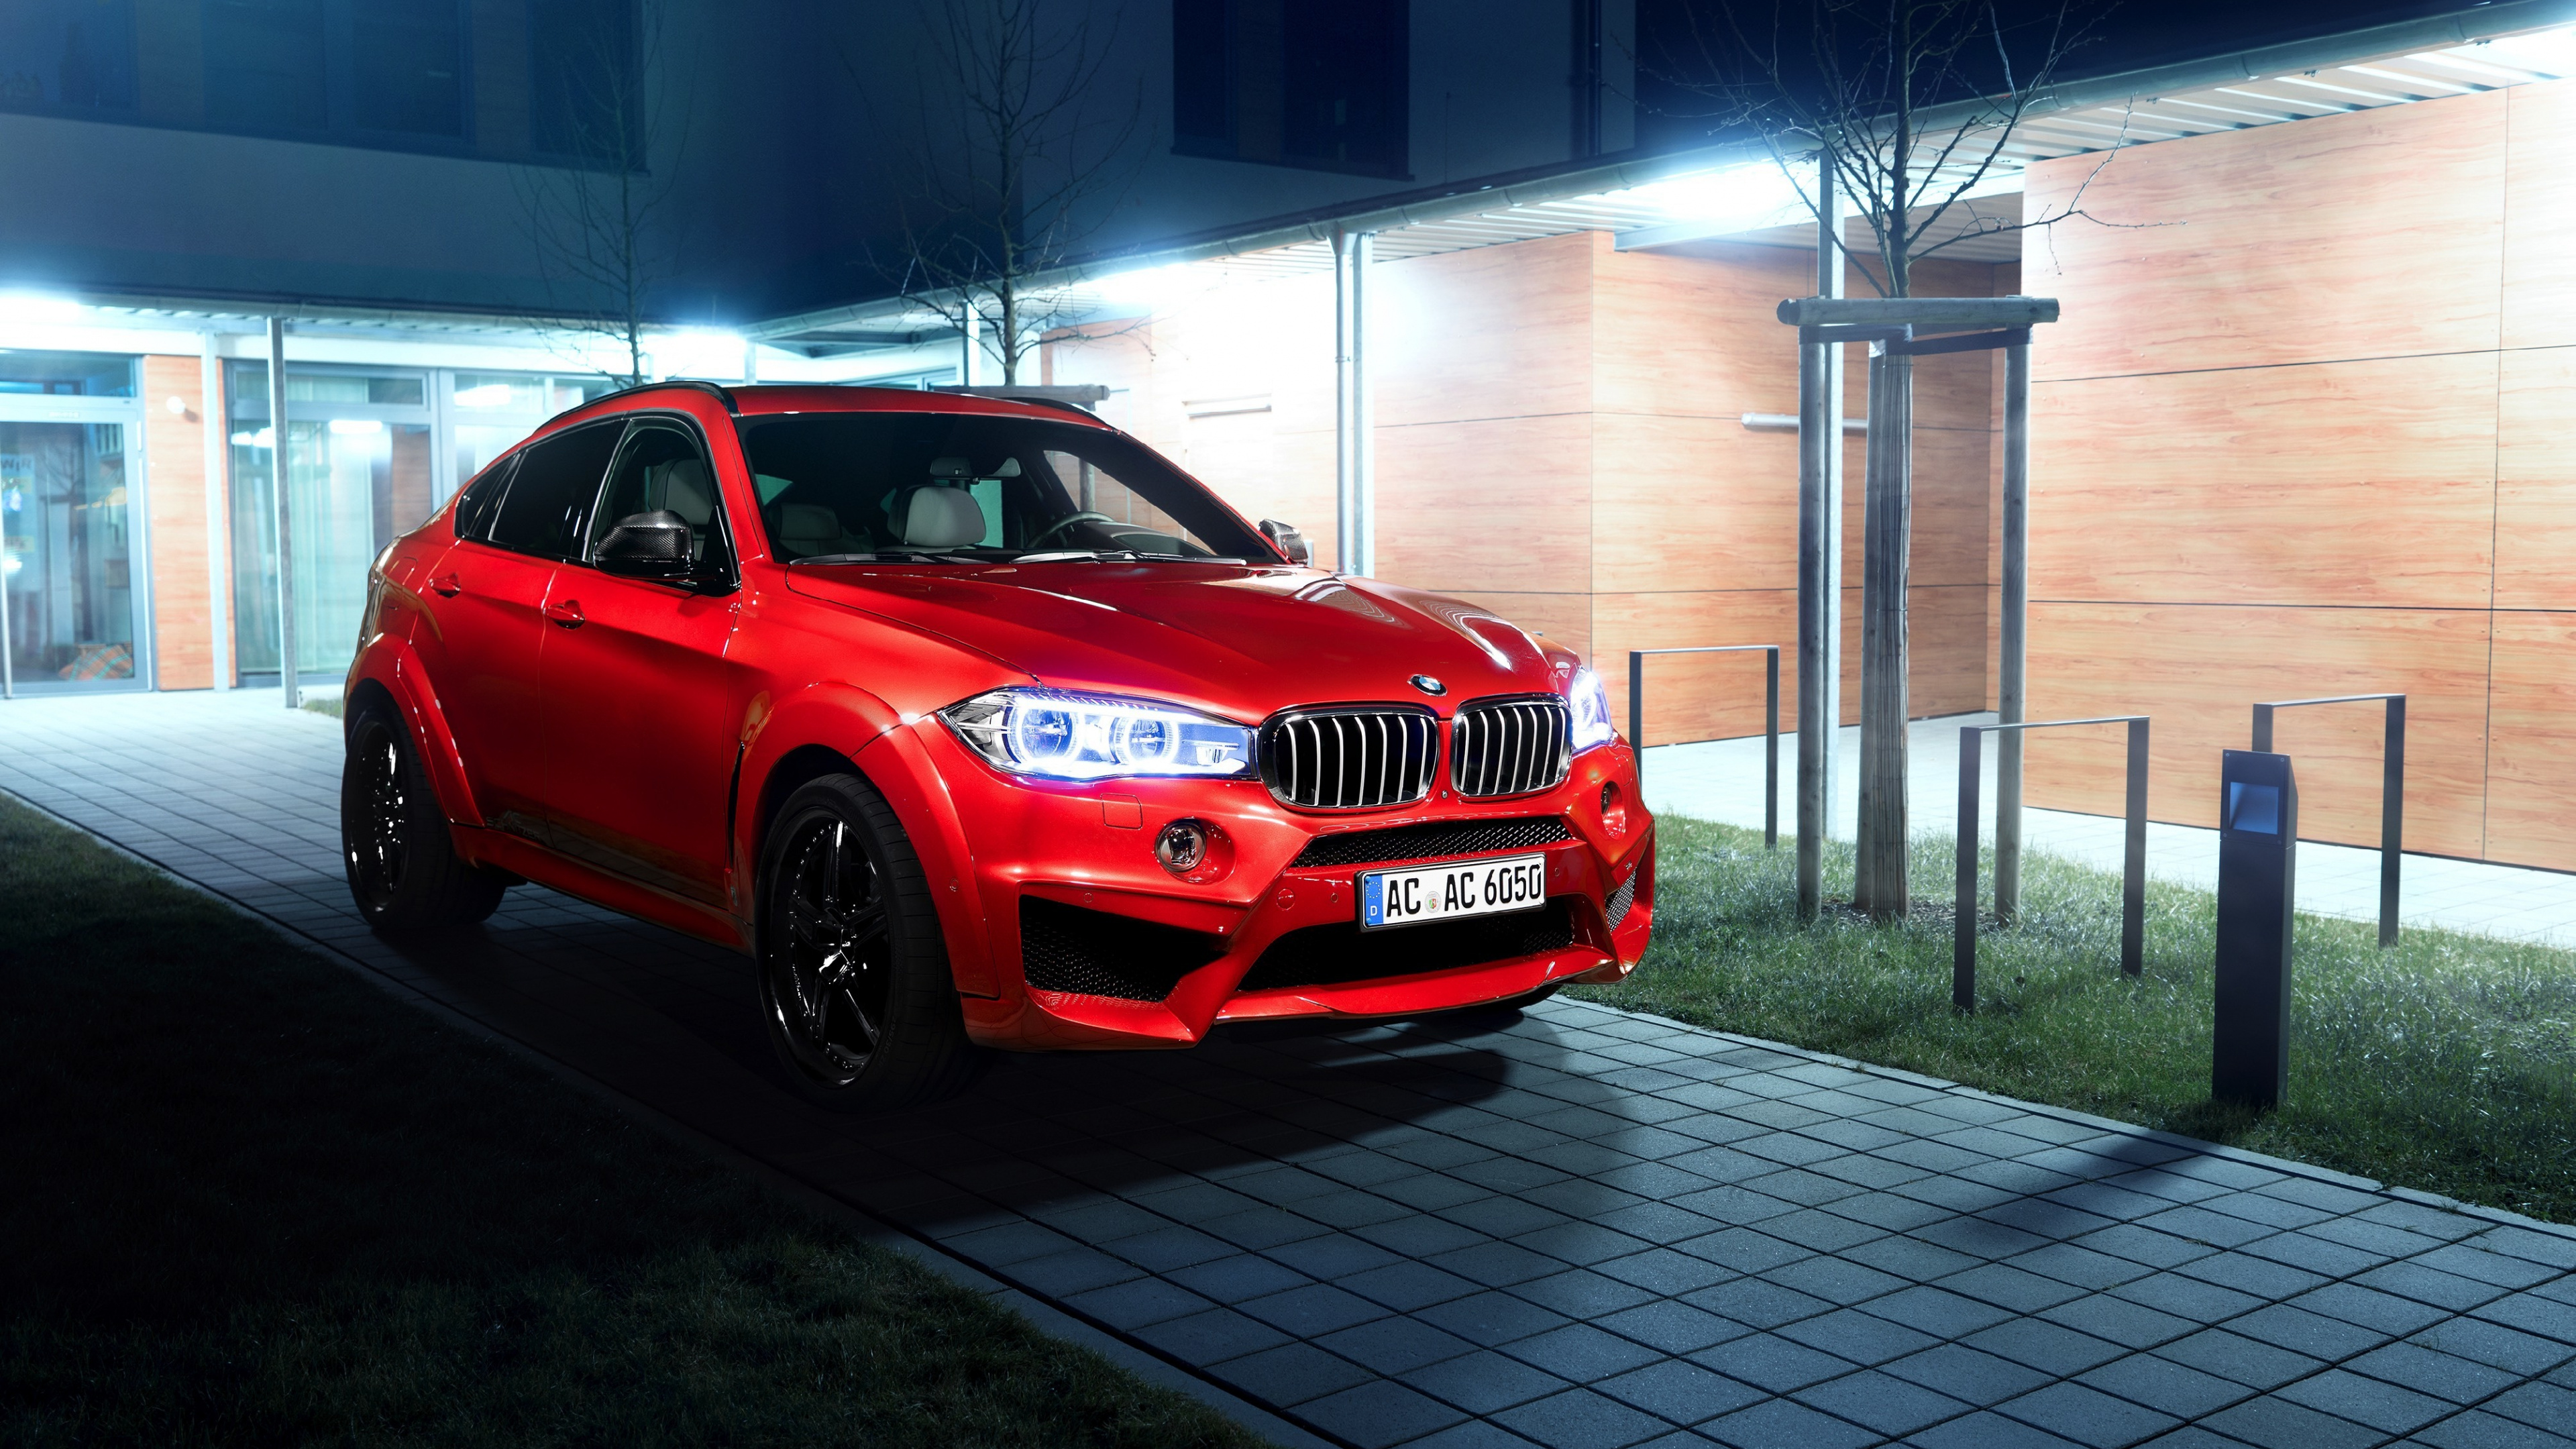 BMW X6, Red luxury car, High-definition wallpaper, Exquisite craftsmanship, 3840x2160 4K Desktop